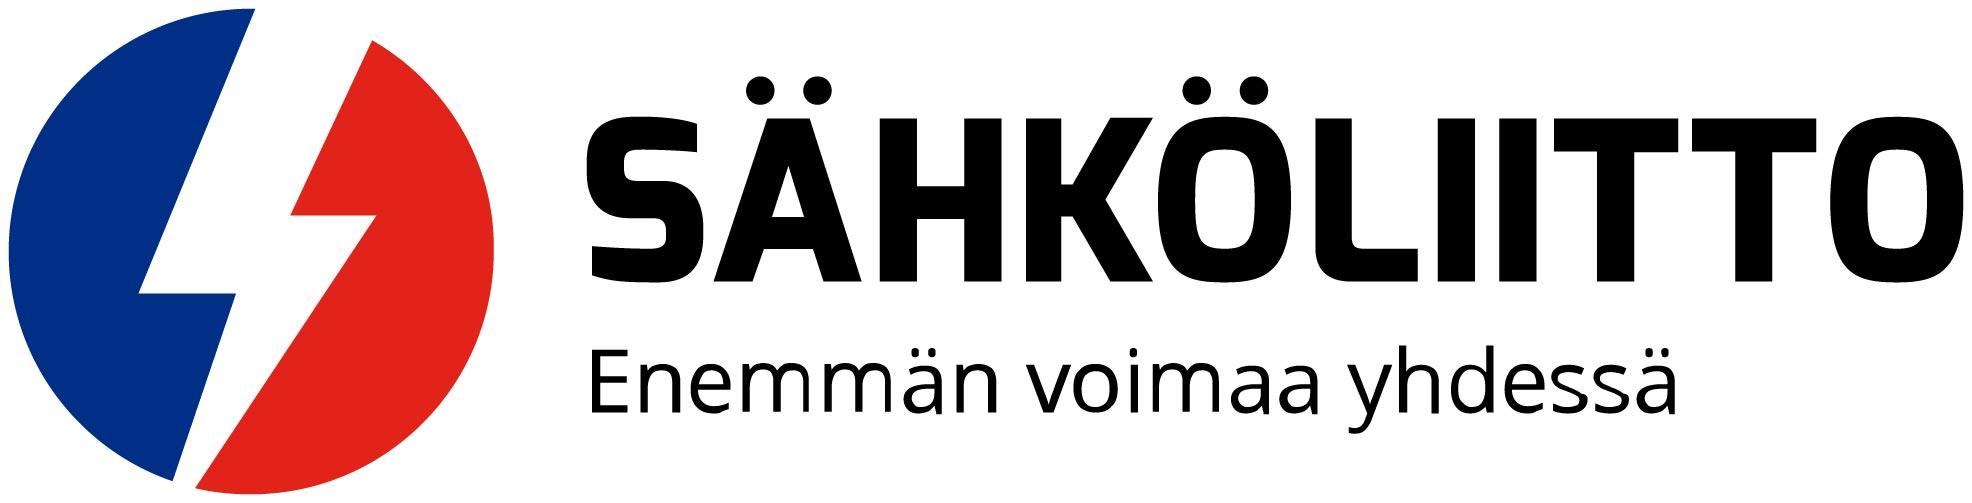 Sähköliiton logo ja slogan